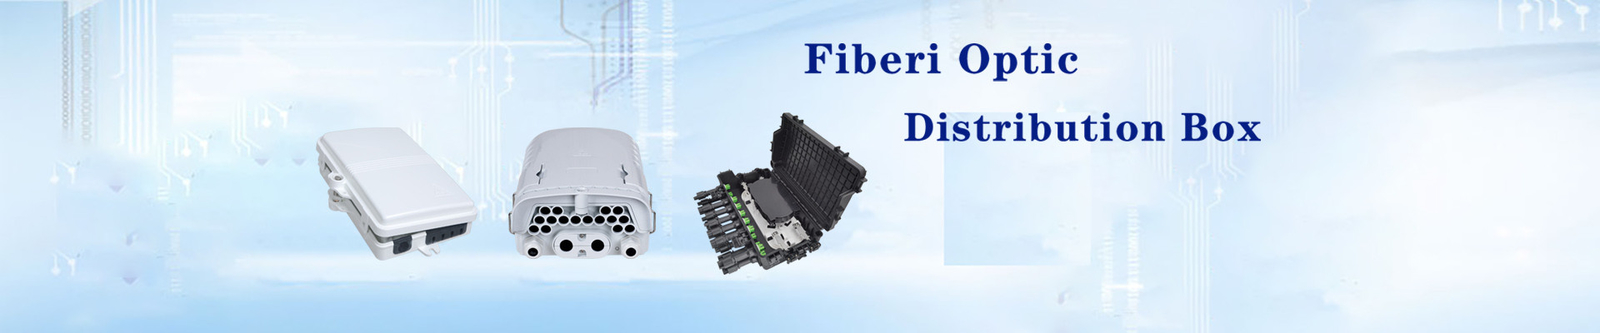 Caja de distribución de la fibra óptica